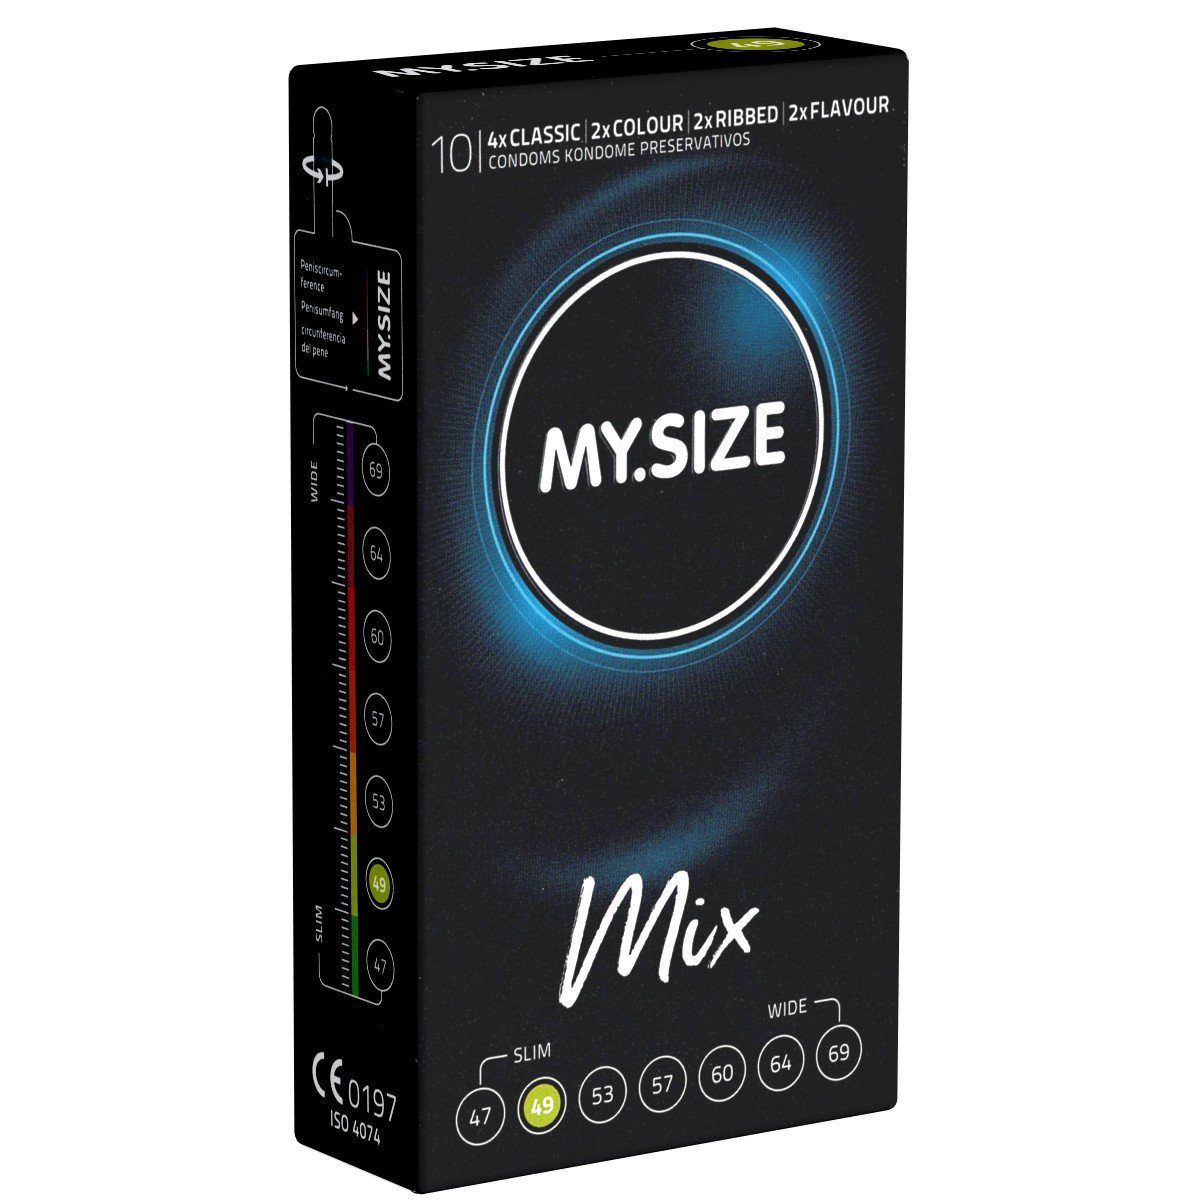 MY.SIZE Kondome Classic 49 MIX Packung mit, 10 St., im gemischten Sortiment, Kondome für besten Tragekomfort und Sicherheit